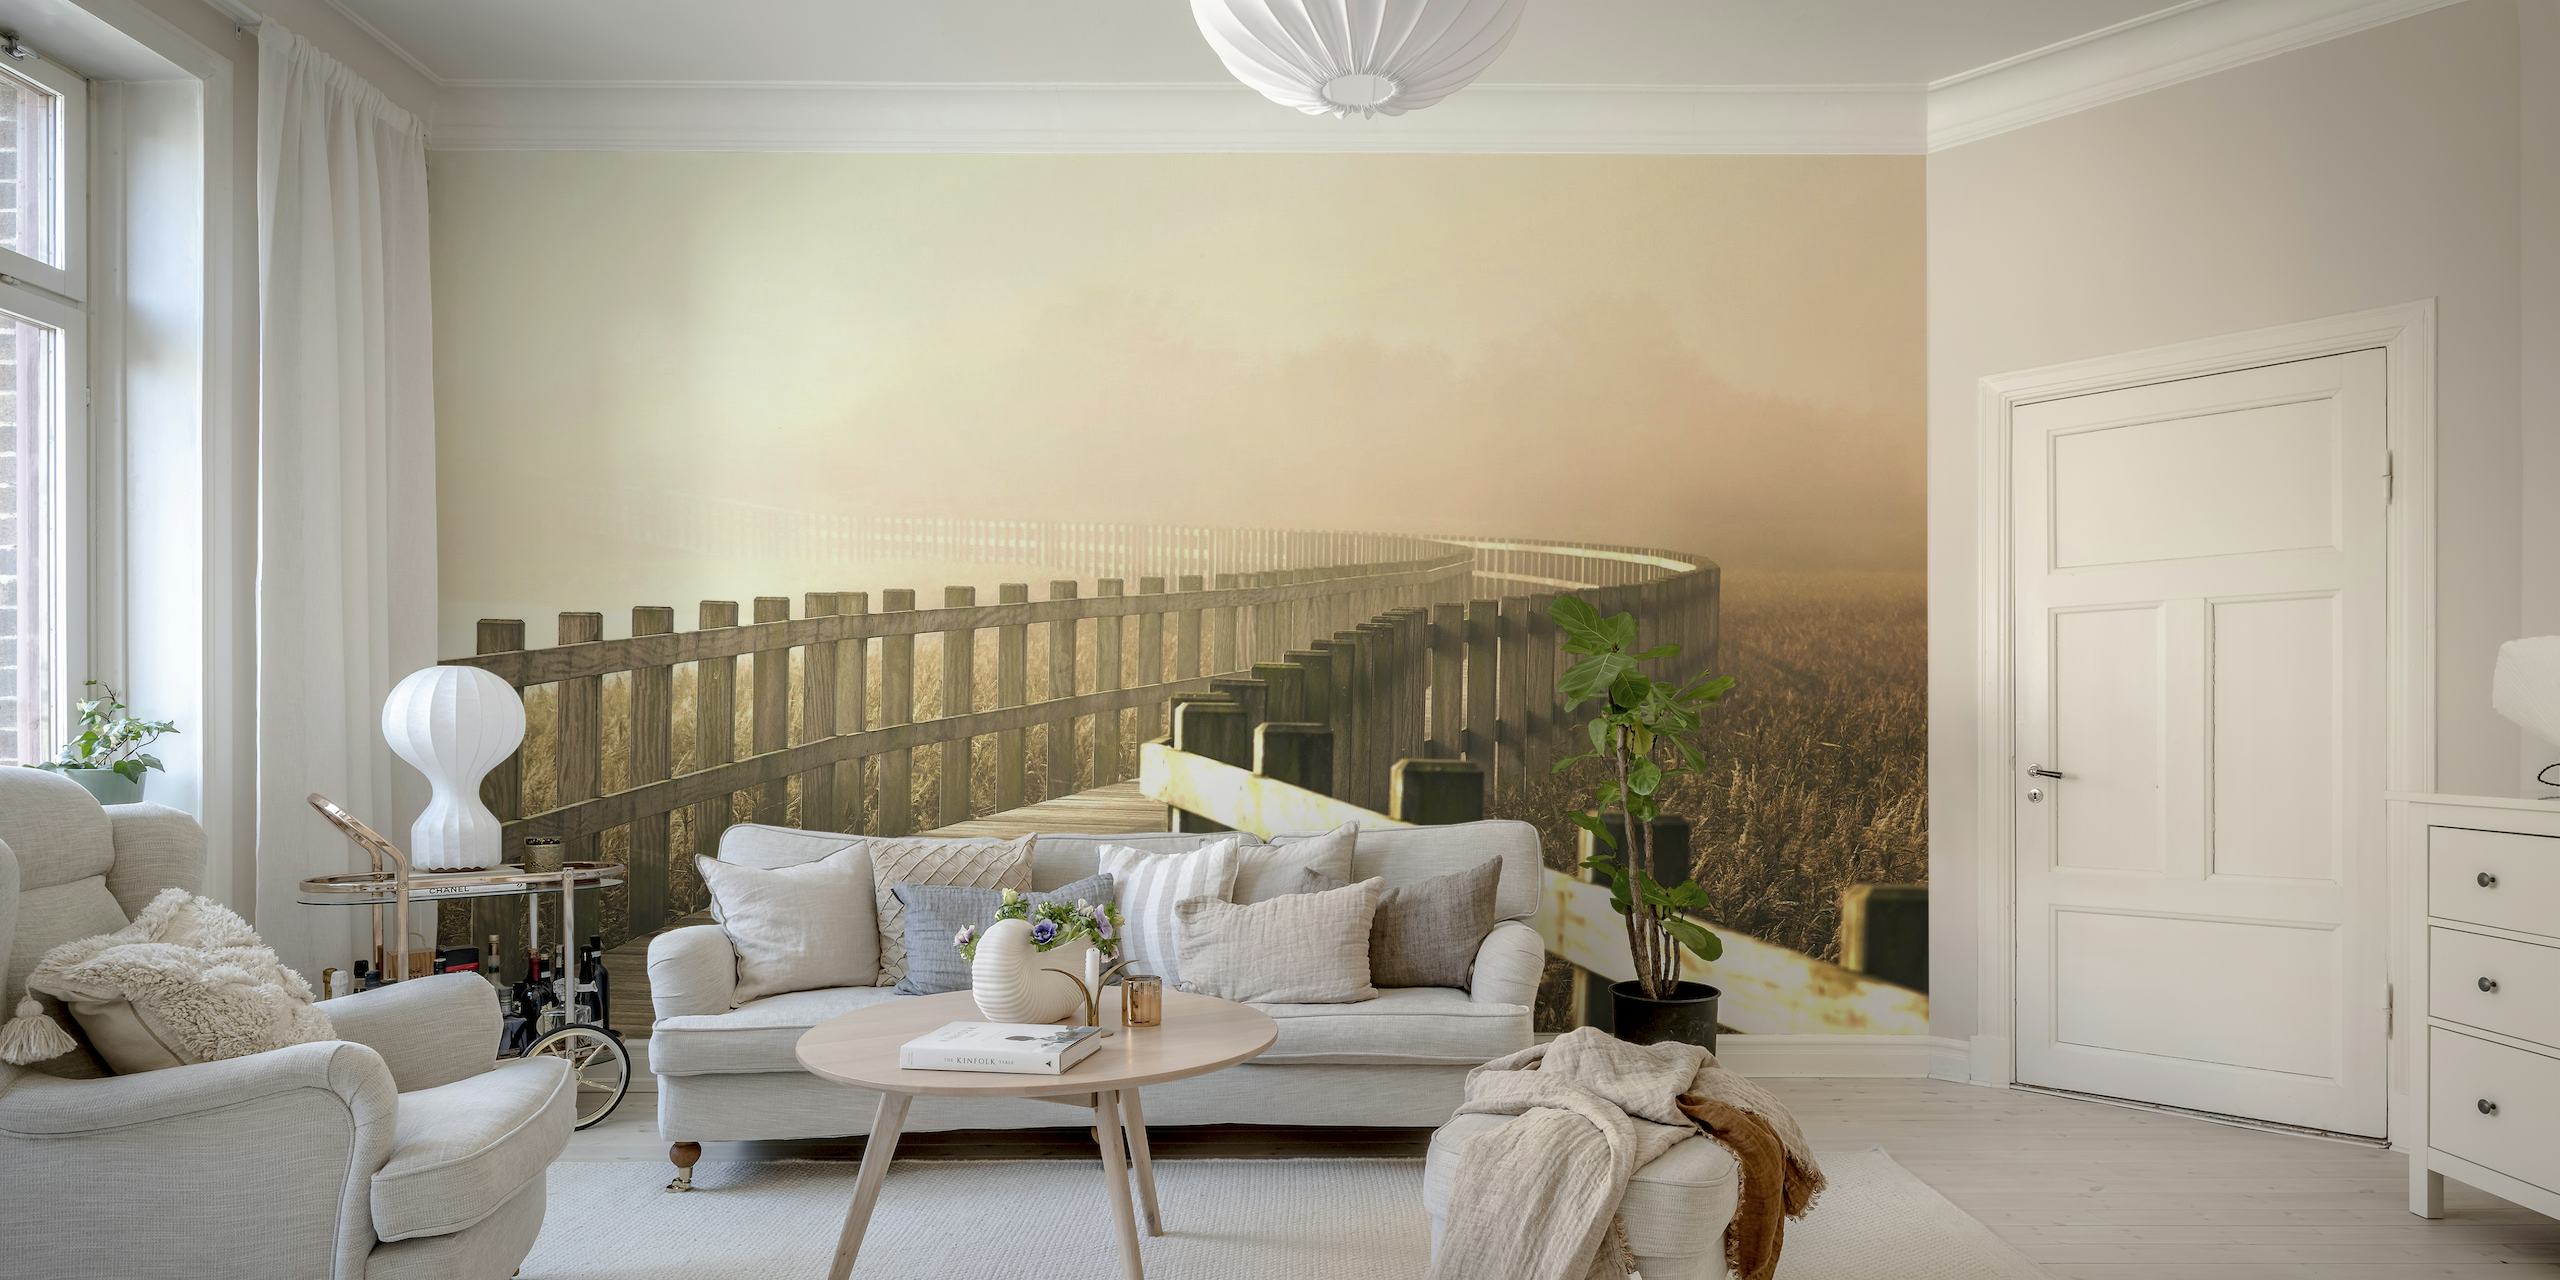 Une fresque murale sereine représentant un chemin ensoleillé à travers un paysage brumeux, évoquant la paix et l'optimisme.